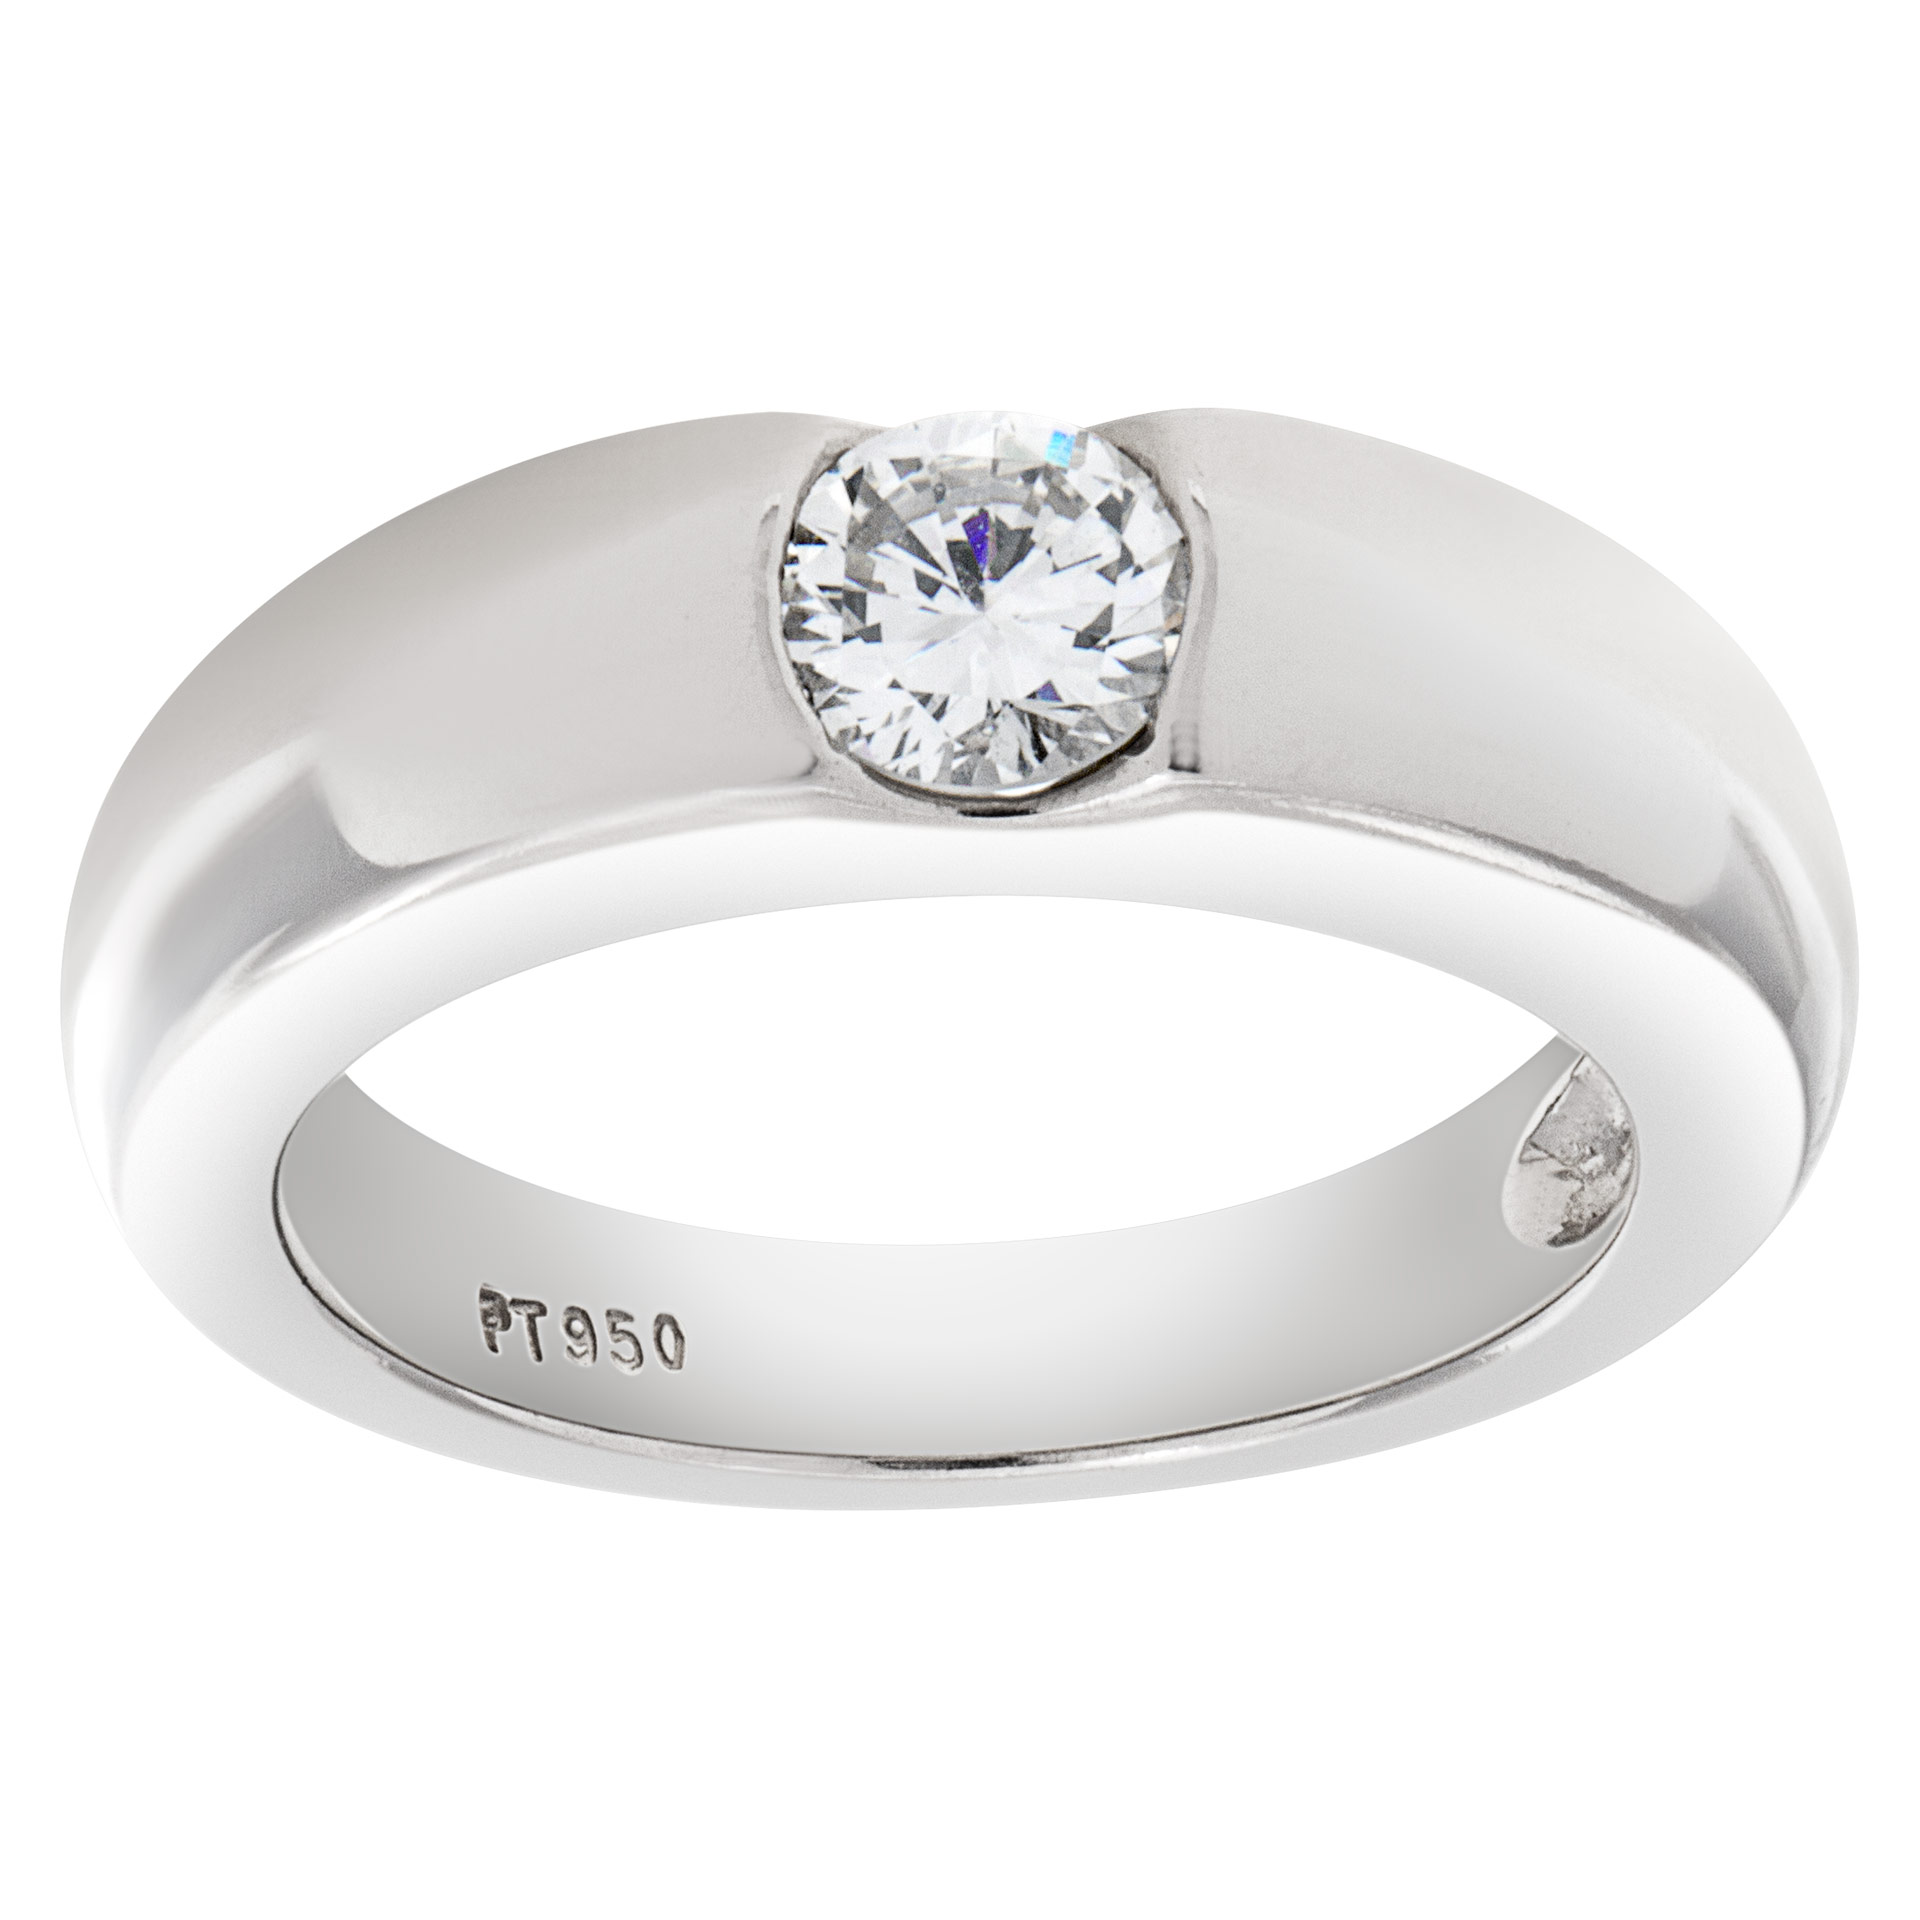 Gipsy solitare diamond ring set in platinum. 0.50 carat full cut round brilliant center diamond image 1